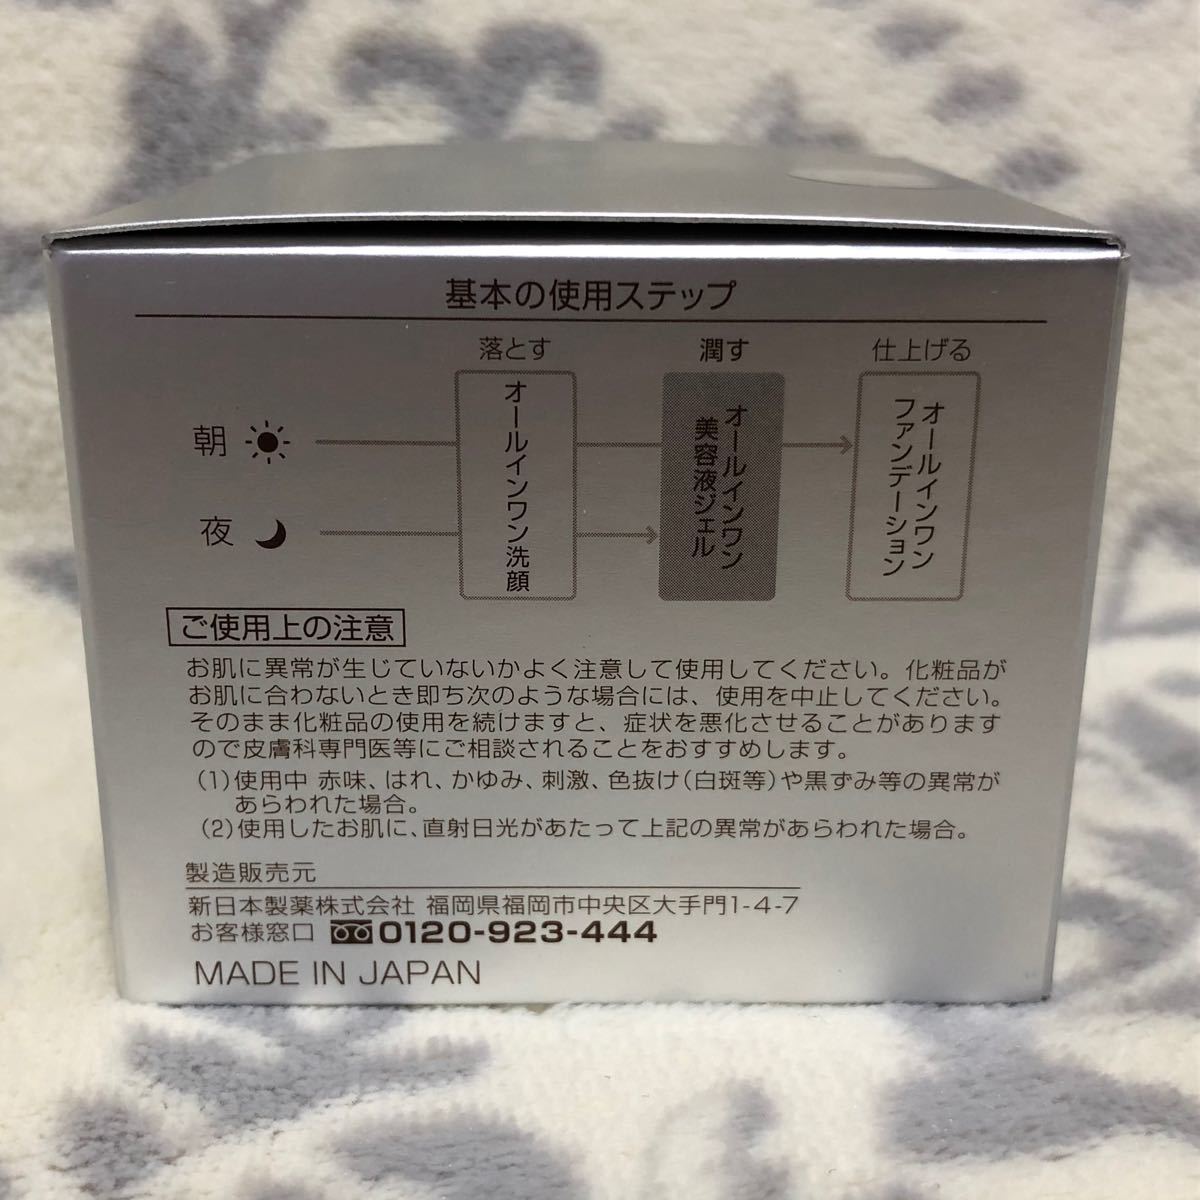 パーフェクトワン 薬用ホワイトニングジェル 75g 2個セット / 新日本製薬 / オールインワンゲル 美白化粧品 / シミ